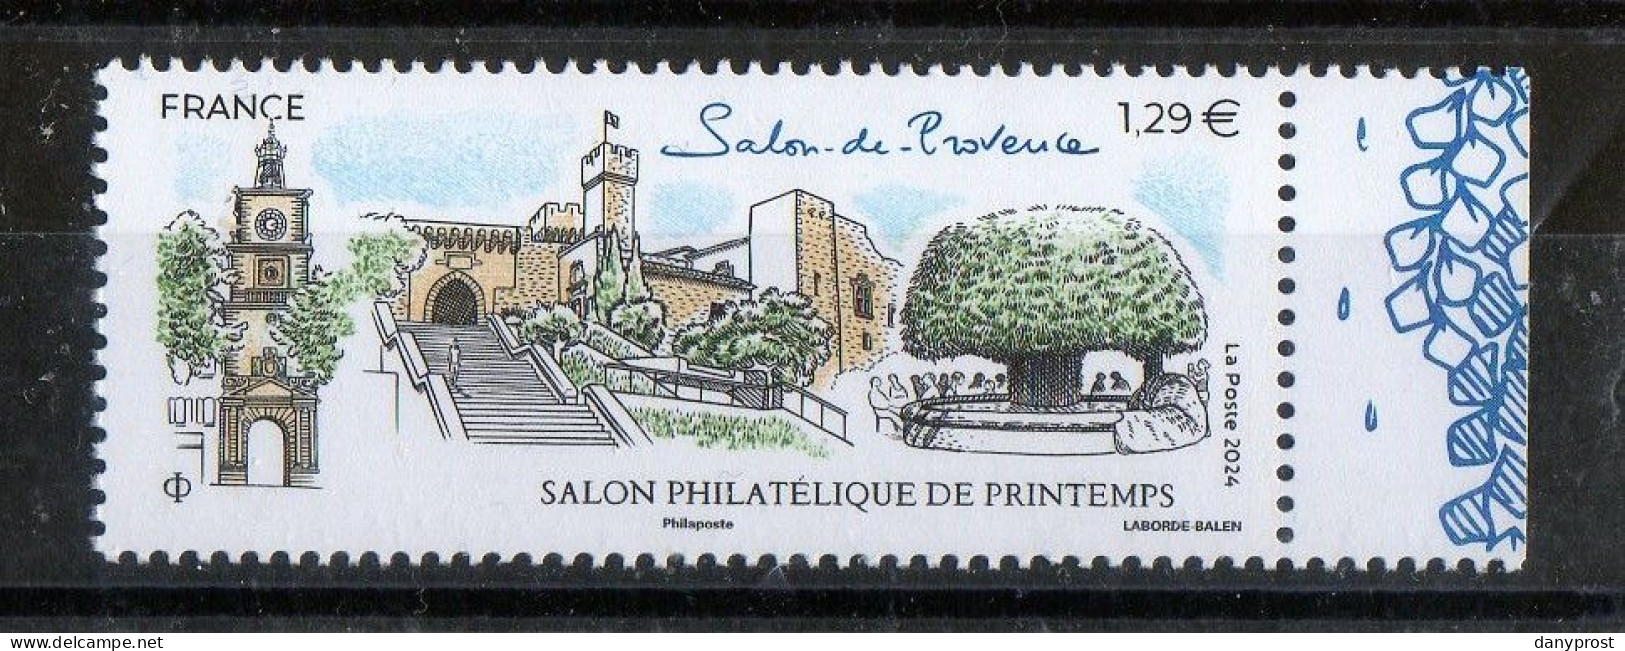 FR 2024 -" SALON PHILATELIQUE DE PRINTEMPS-Salon De Provence  " 1 T  LV 20g  à 1.29 € - 1 Marge Droit Illustrée - Neuf** - Nuevos